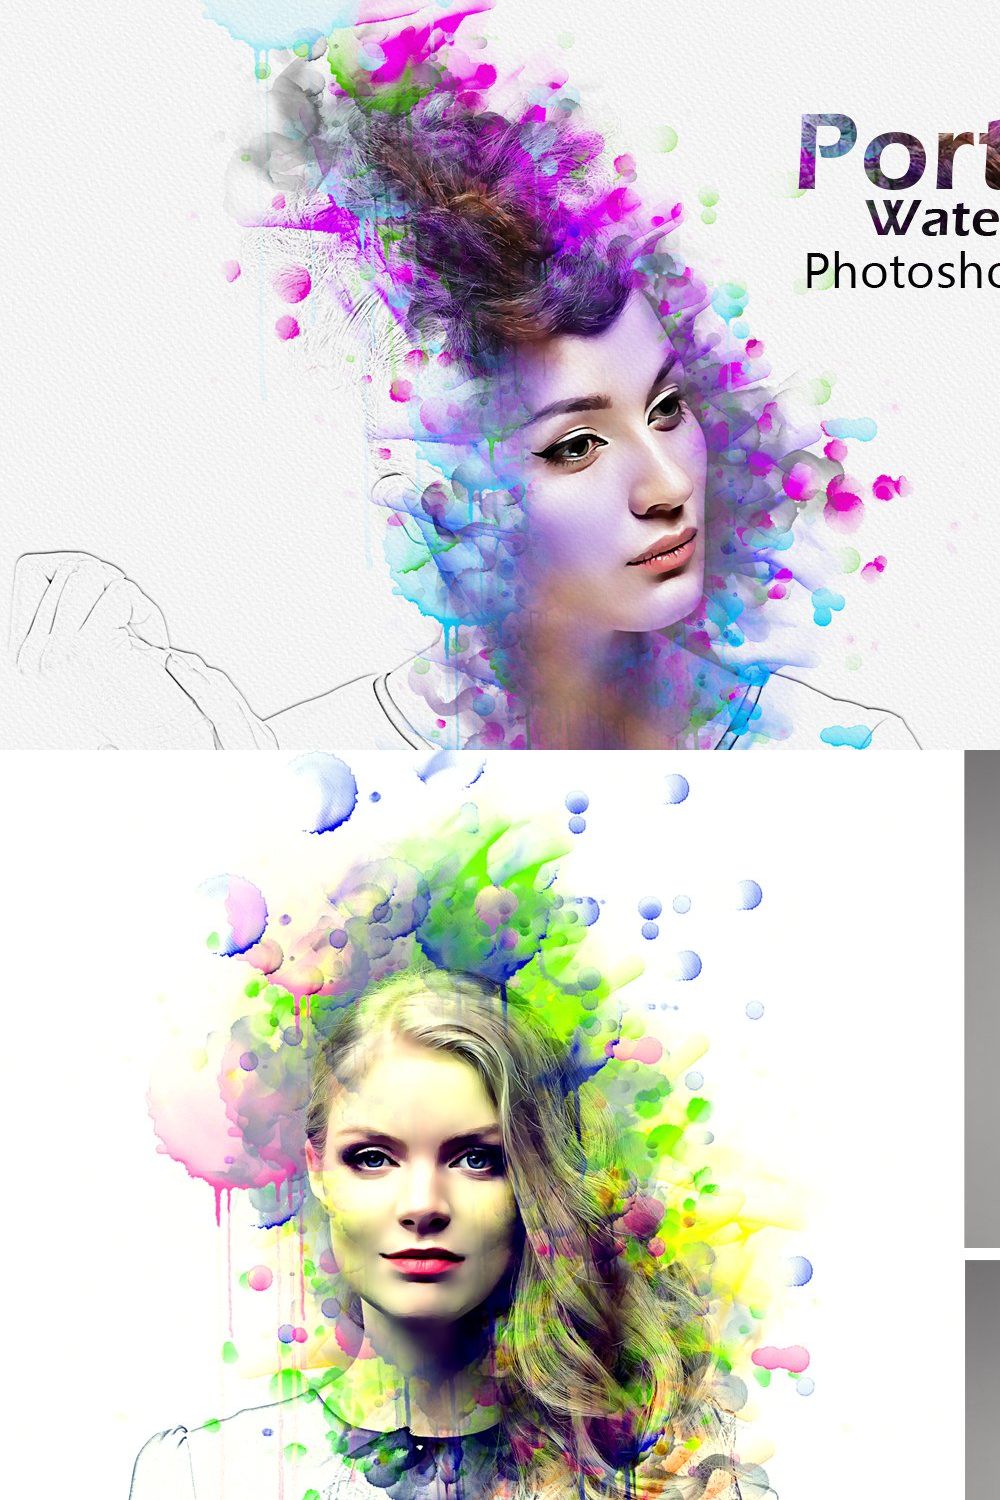 Portrait Watercolor Photoshop Action pinterest preview image.